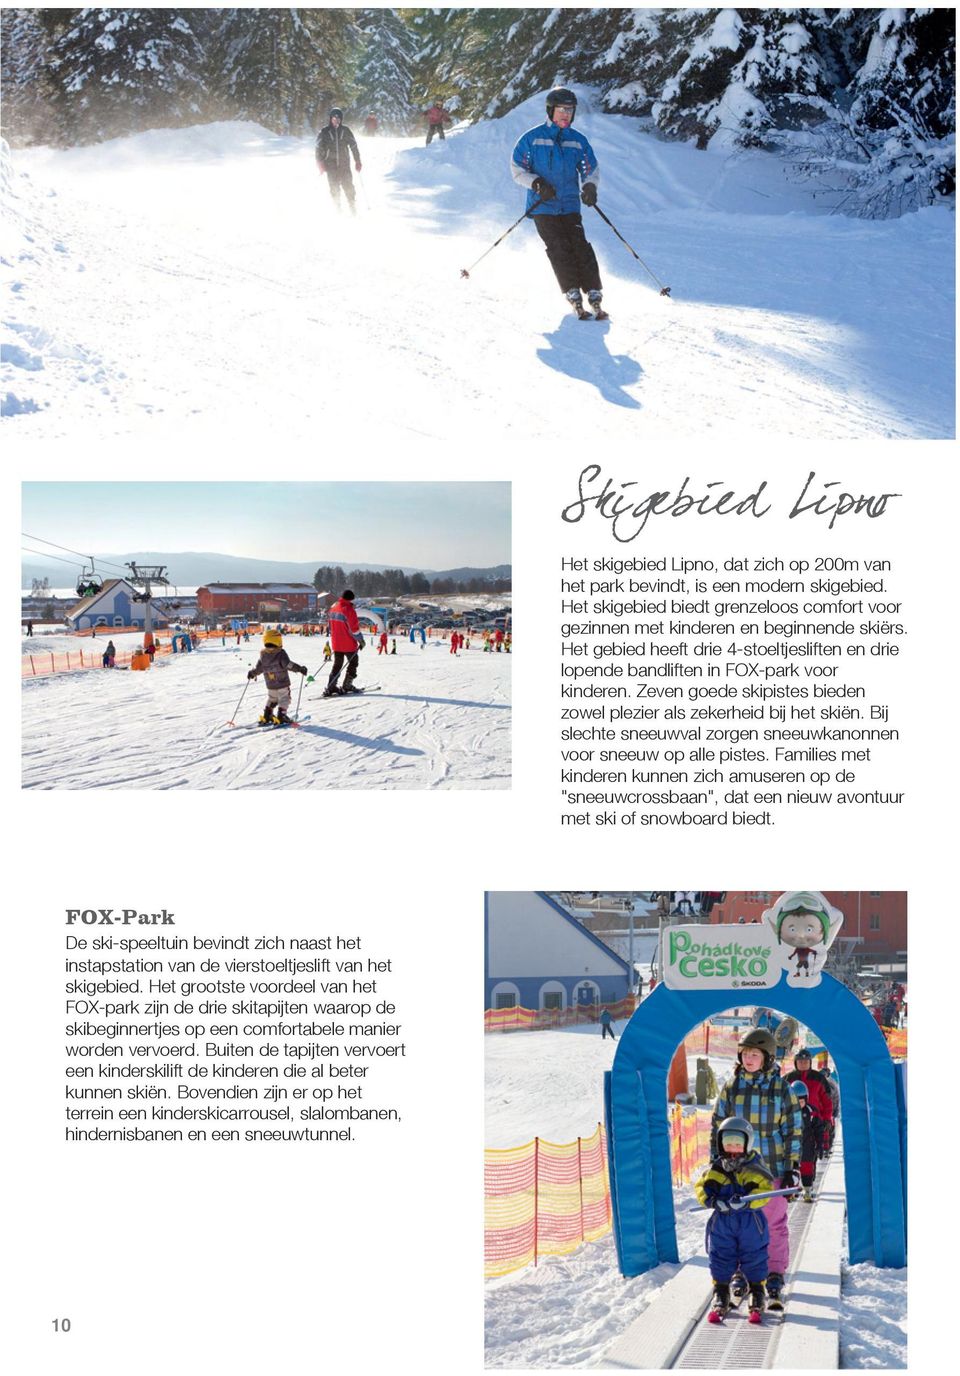 Bij slechte sneeuwval zorgen sneeuwkanonnen voor sneeuw op alle pistes. Families met kinderen kunnen zich amuseren op de "sneeuwcrossbaan", dat een nieuw avontuur met ski of snowboard biedt.